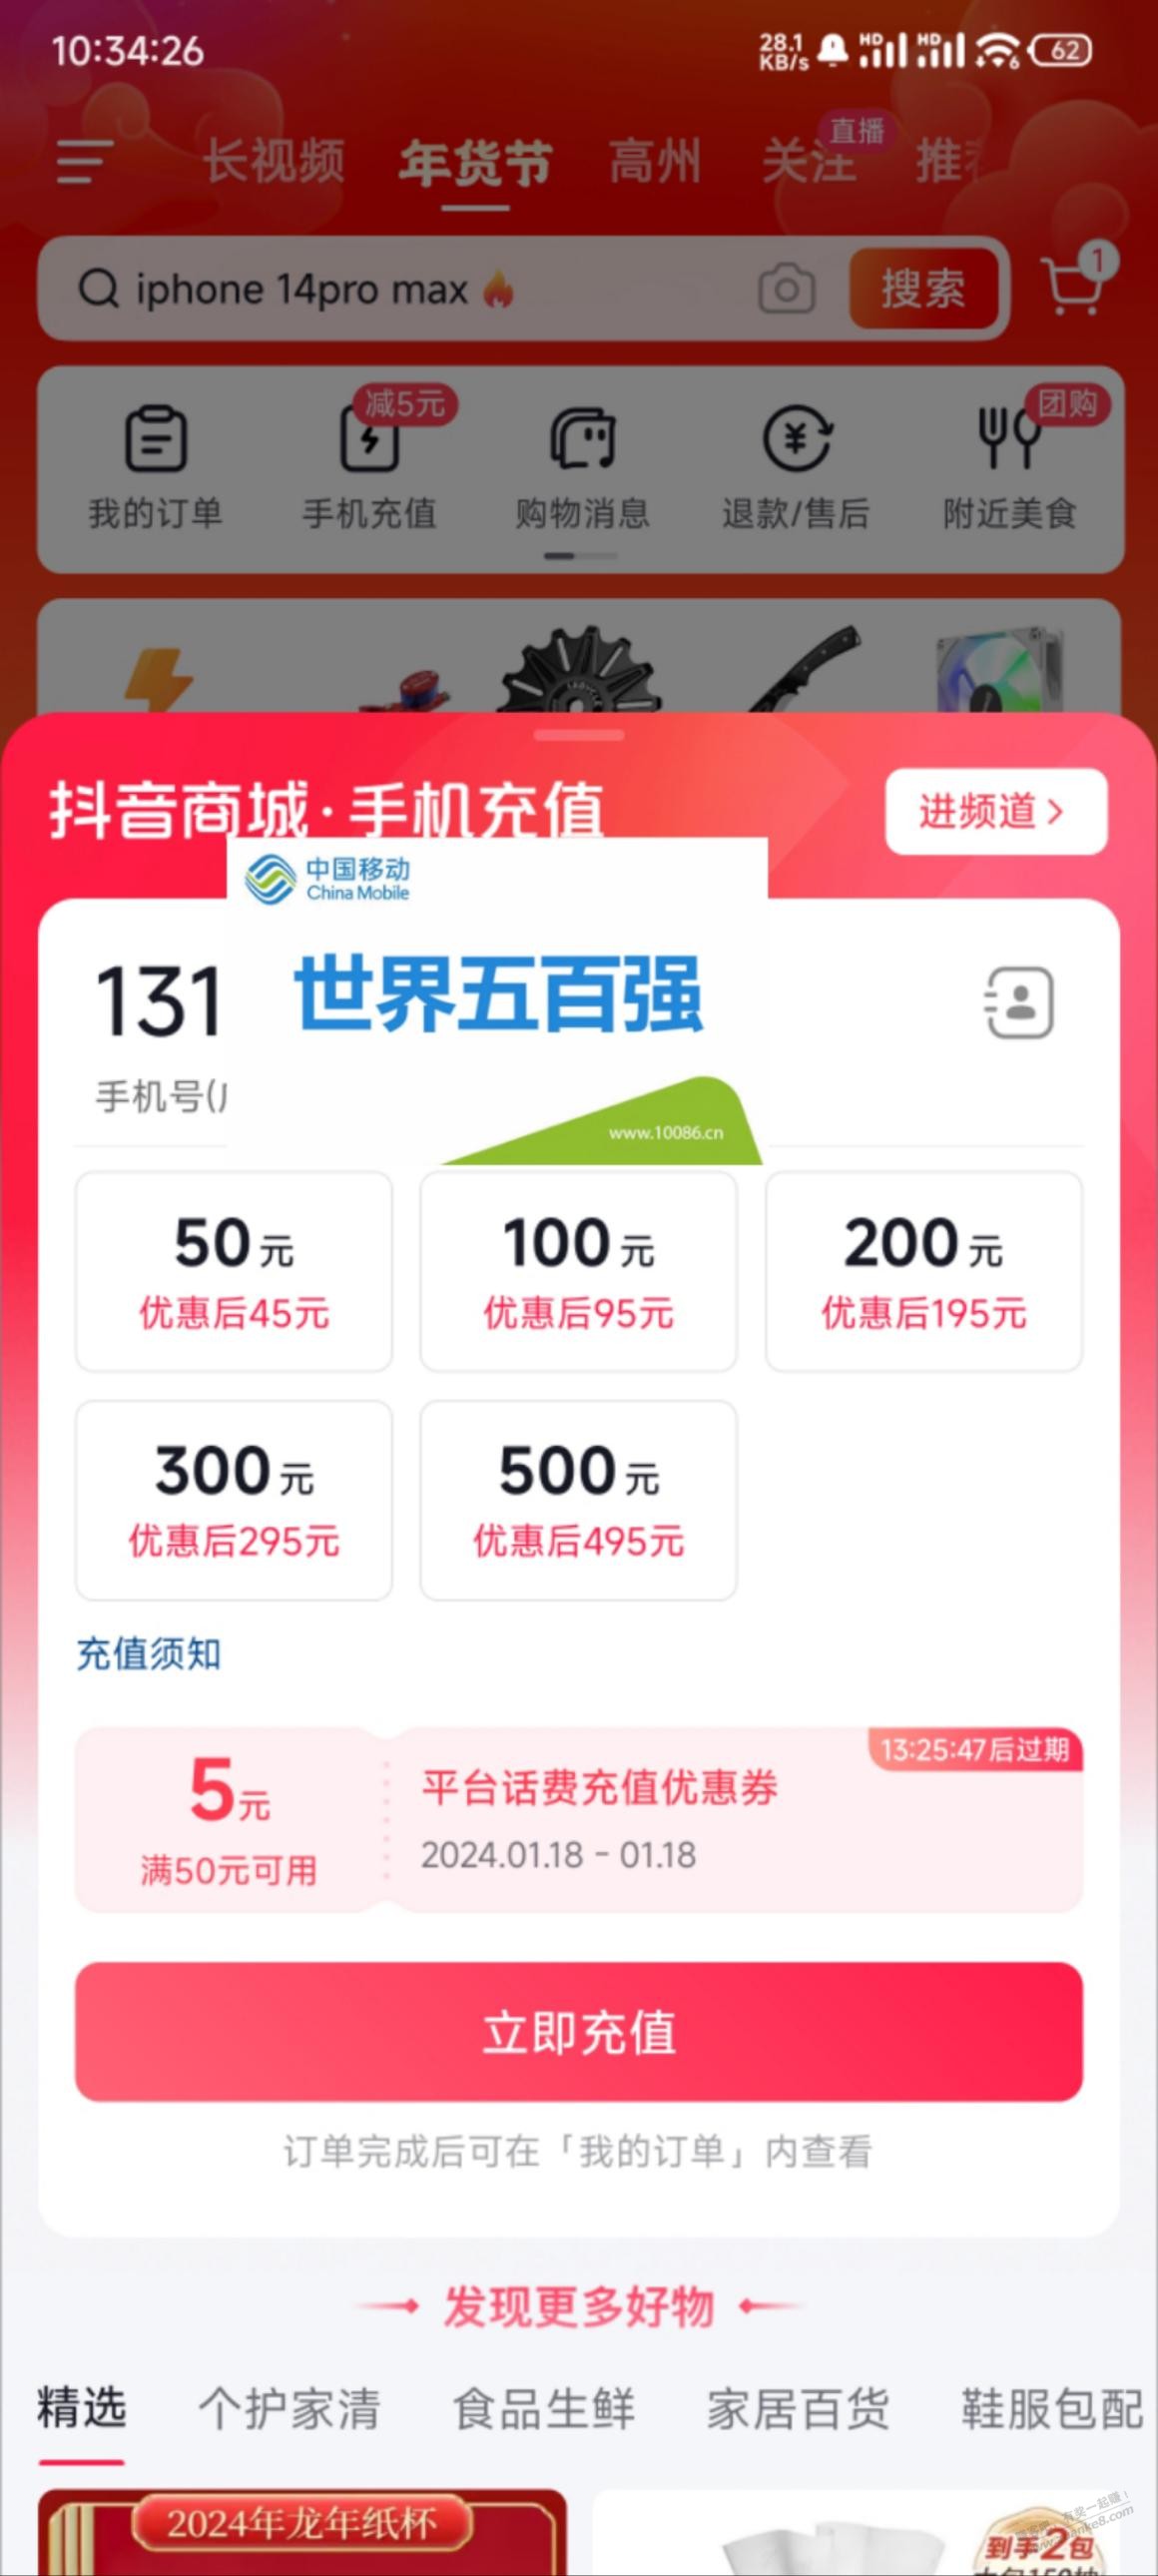 抖音50-5话费券-惠小助(52huixz.com)